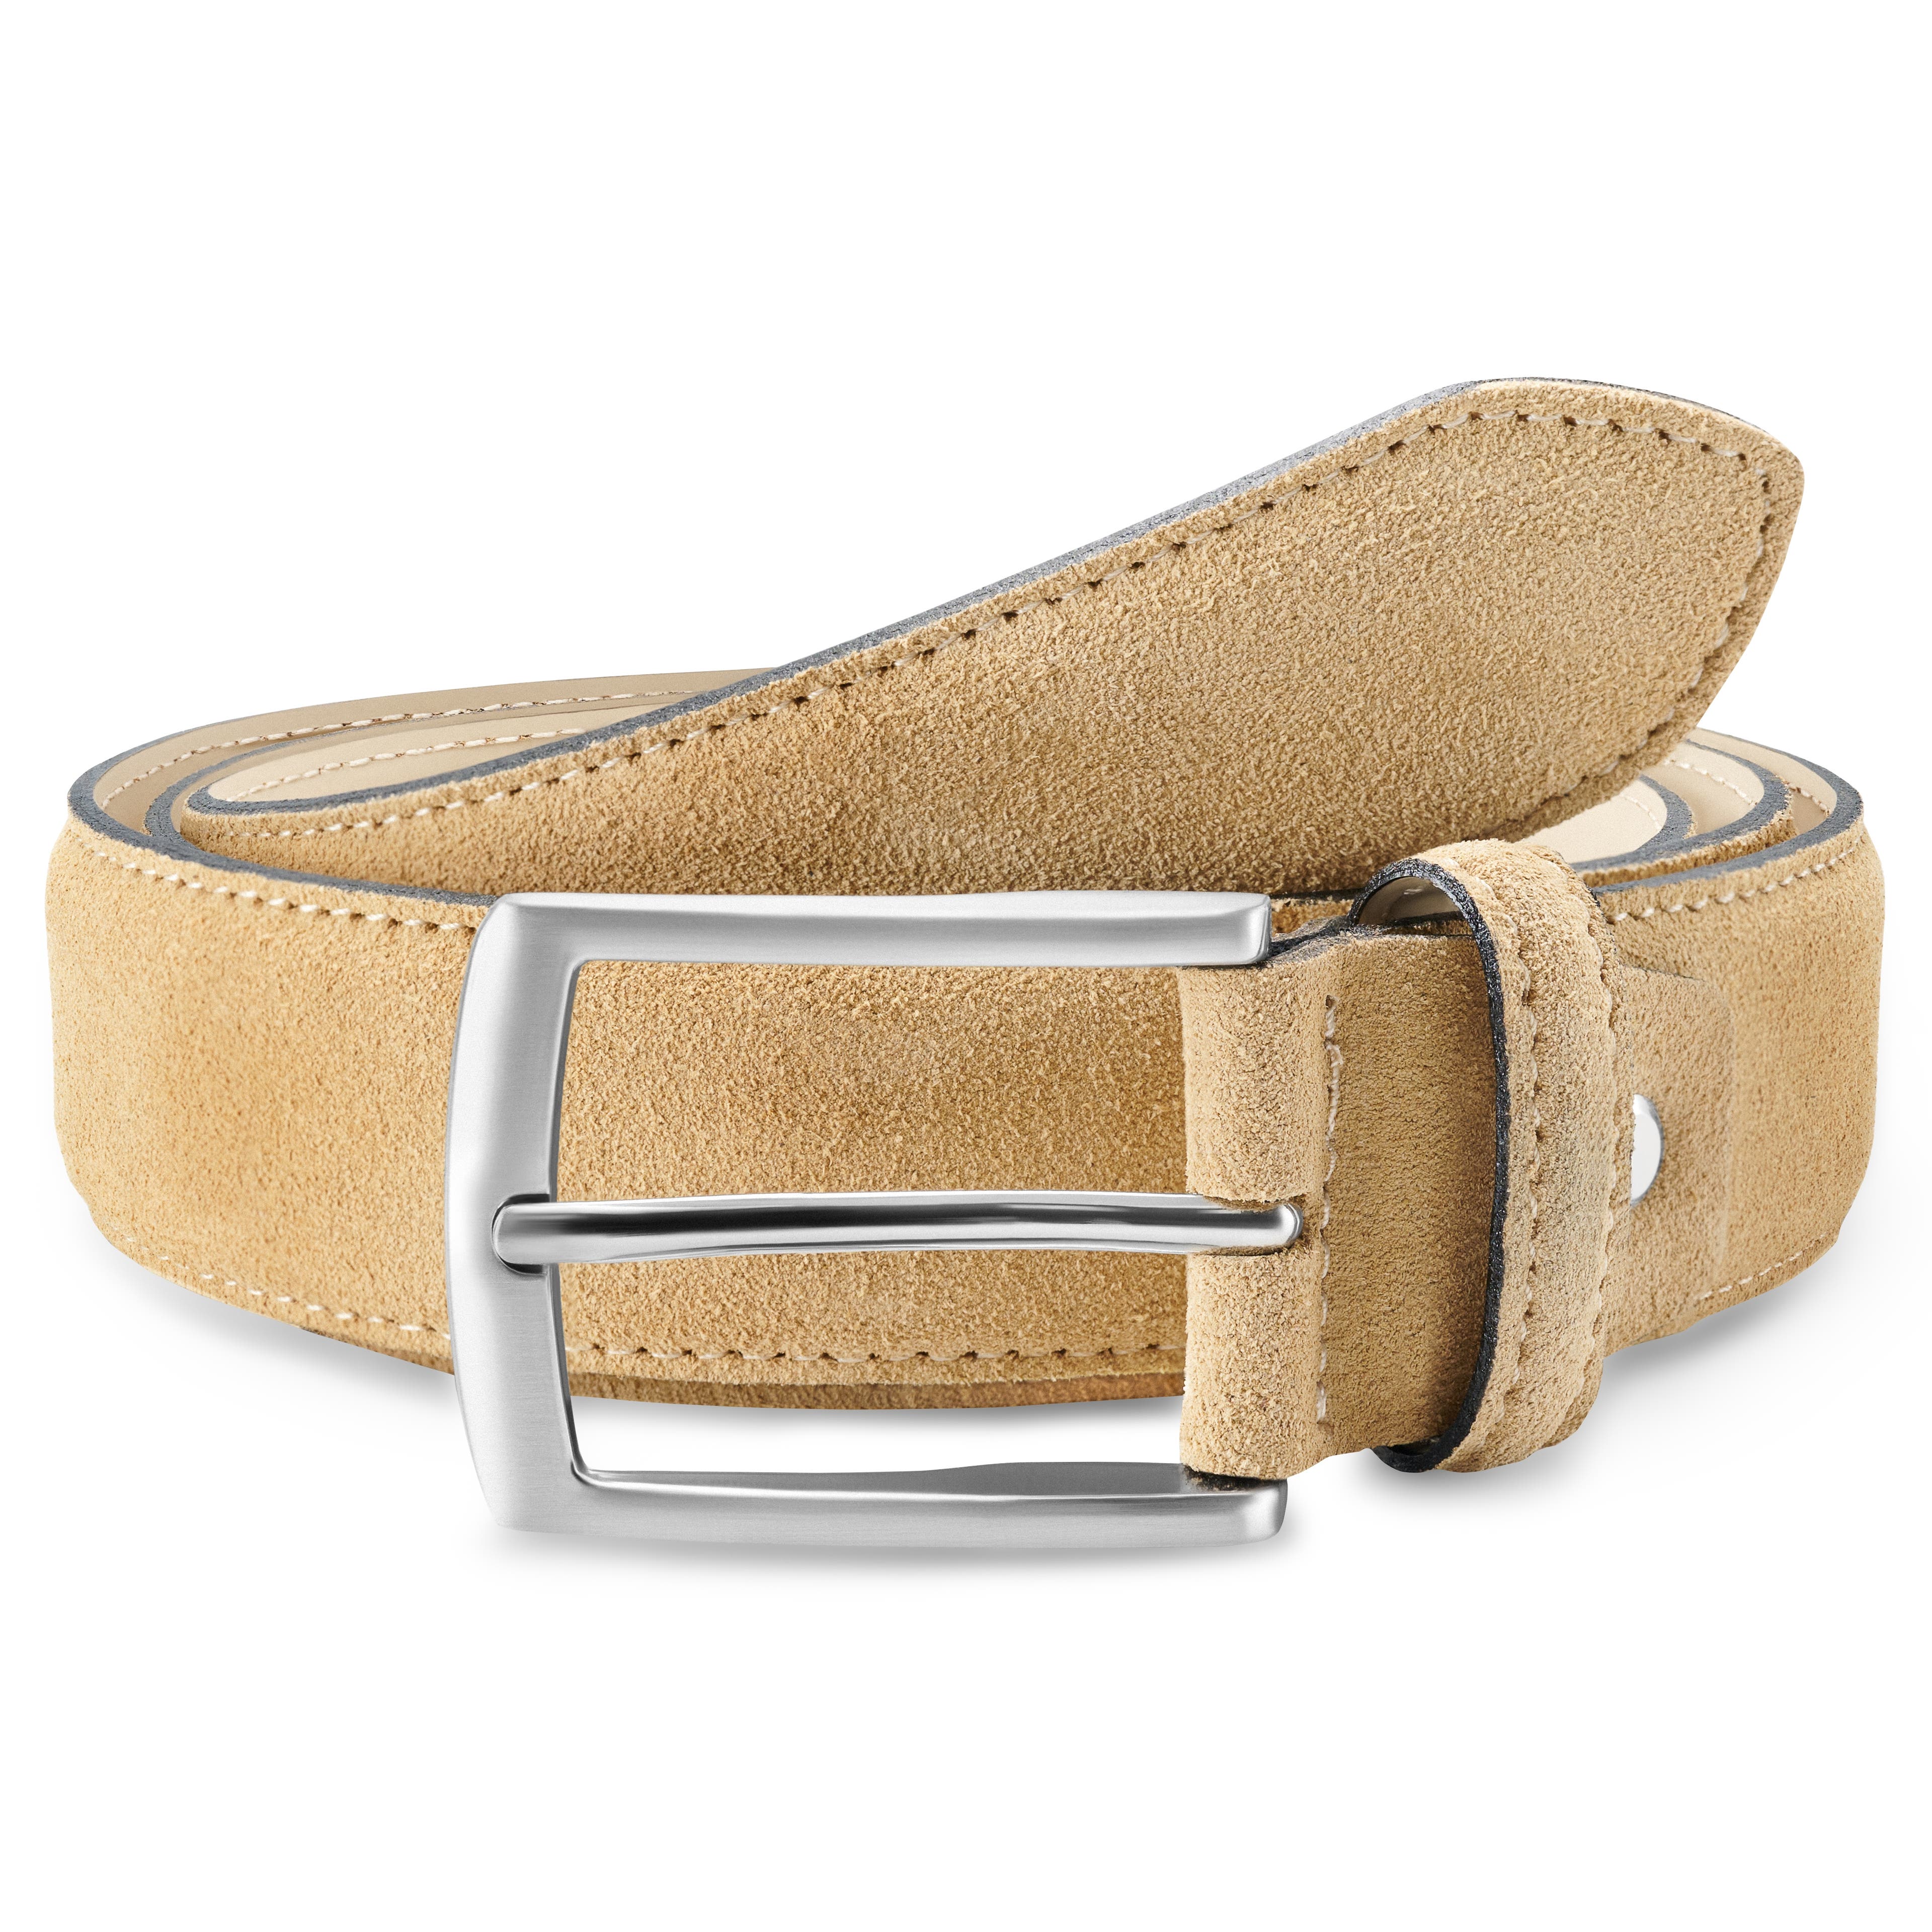 Cinturón de trabajo para hombre – Cinturón de cuero de grano completo  resistente